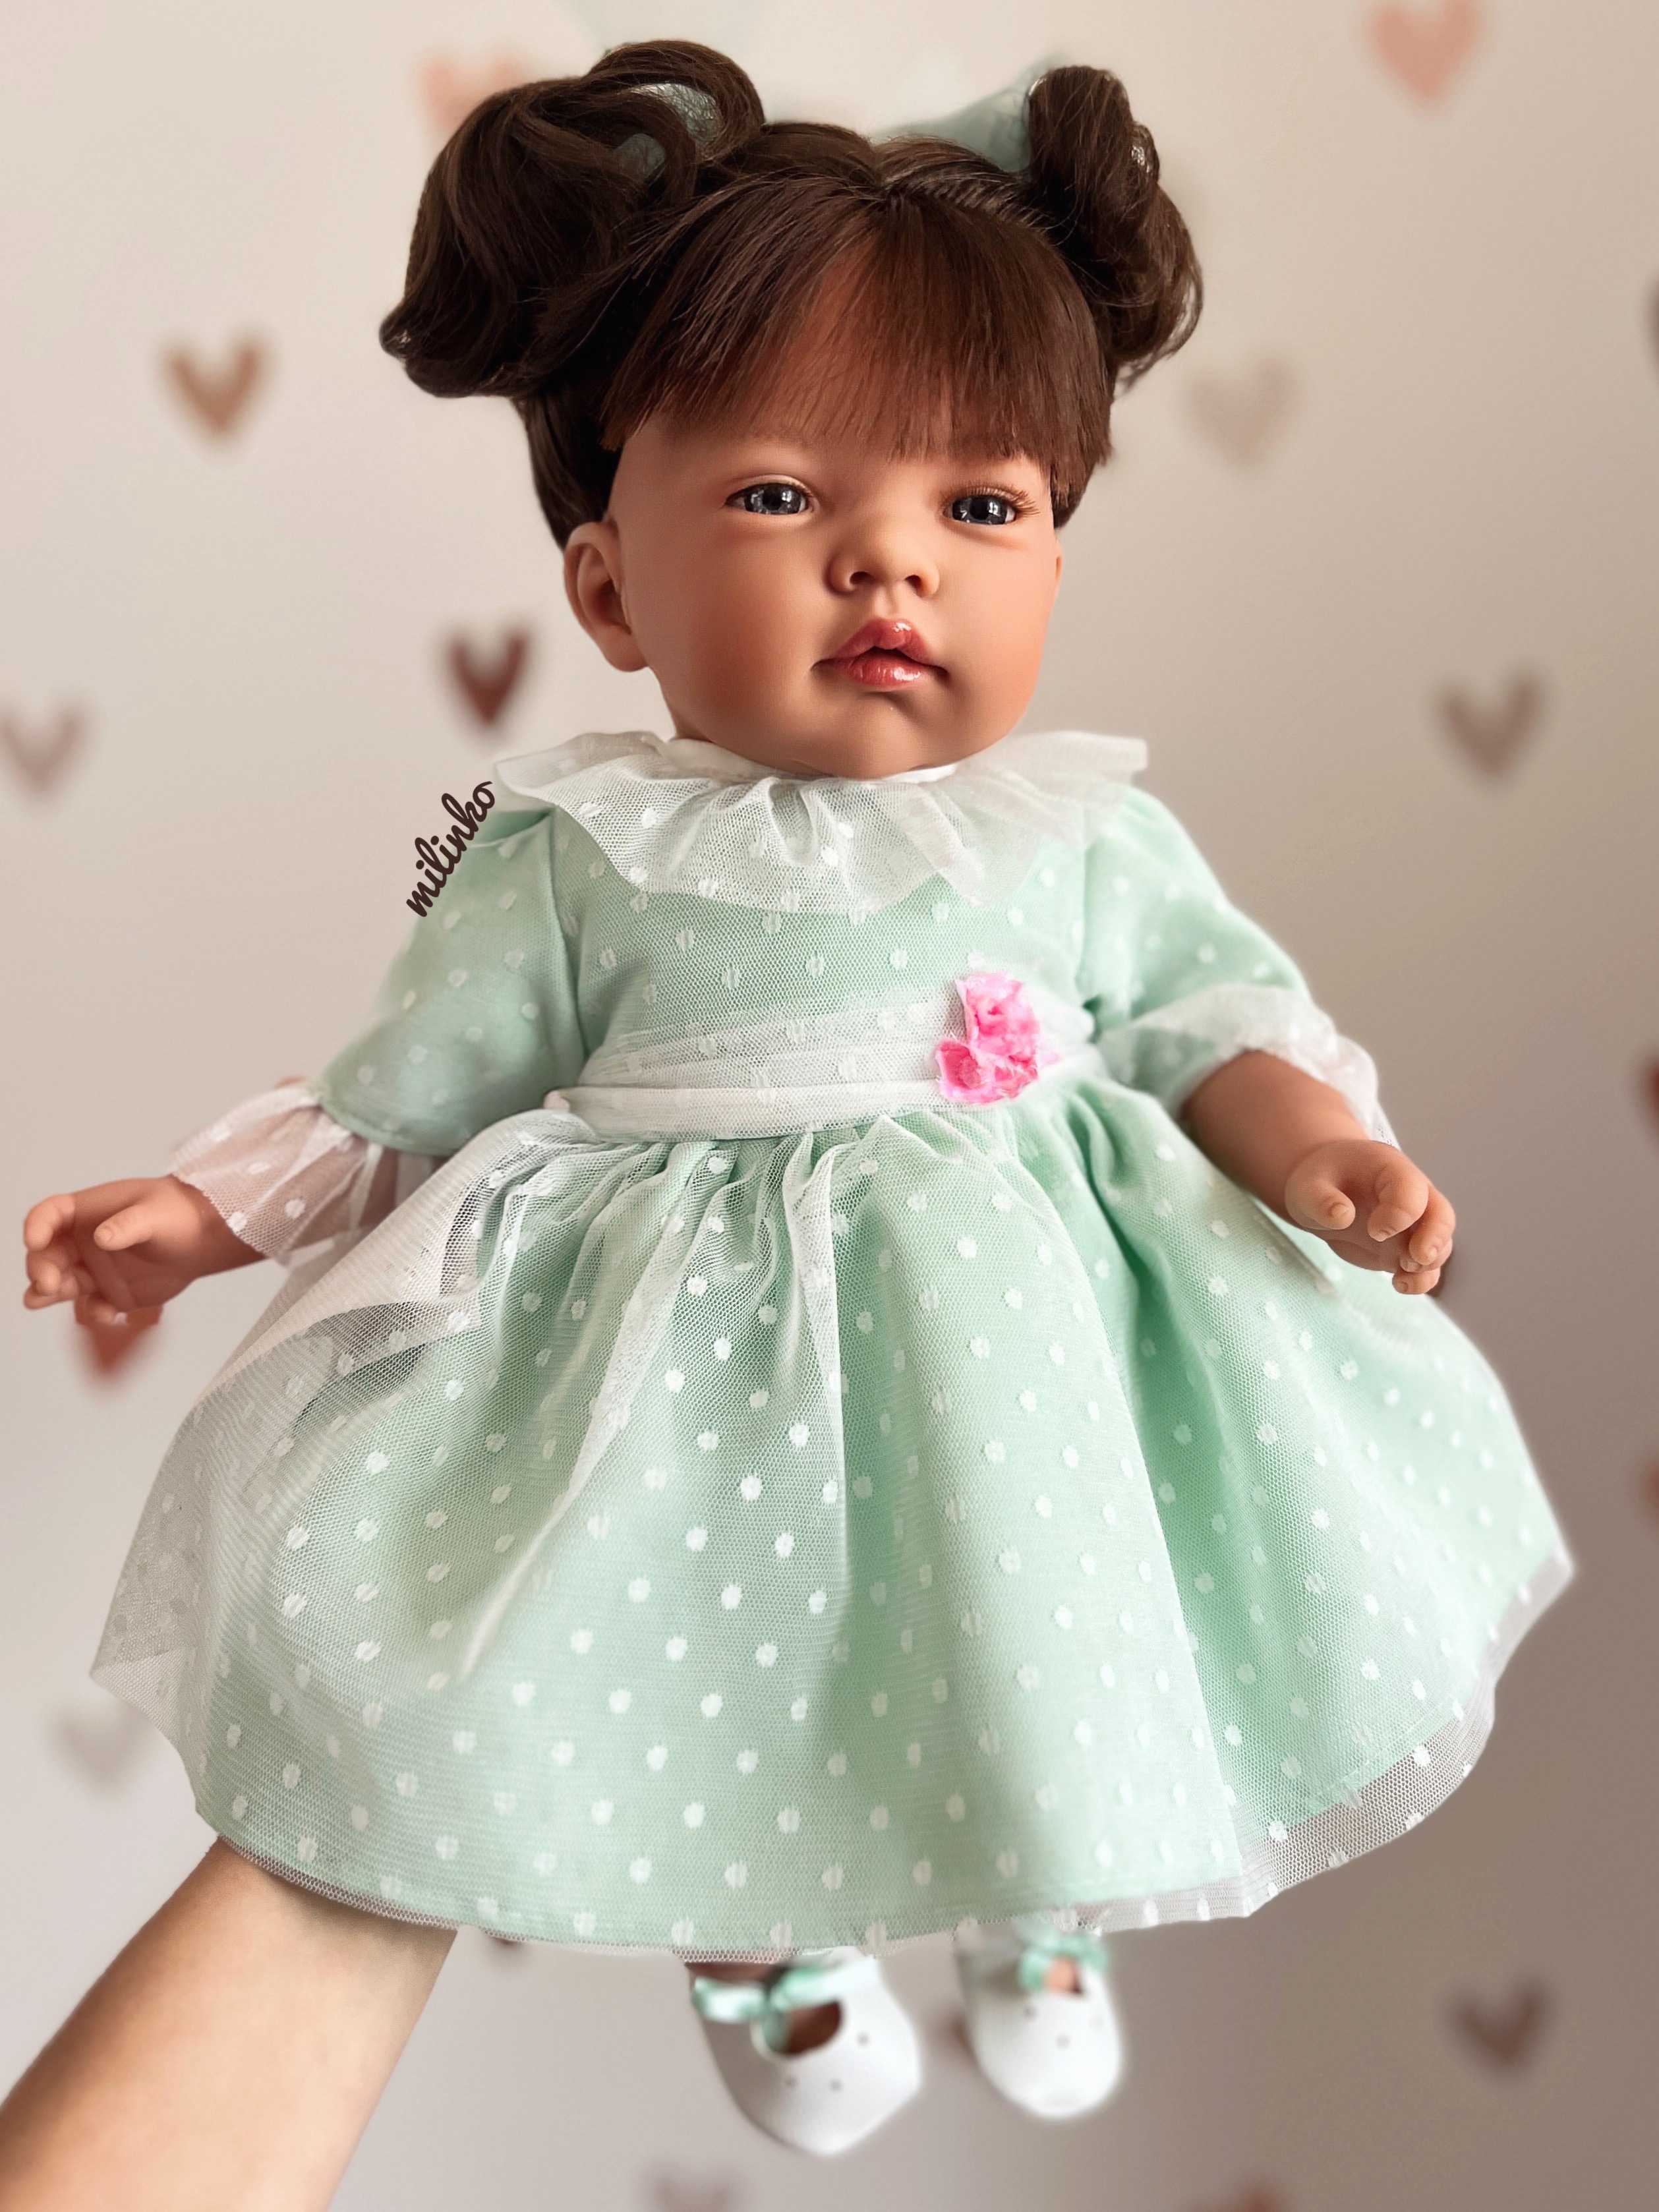 E-shop Nines D'Onil Realistická španielska bábika- Celia Elegant, hnedovláska 45cm